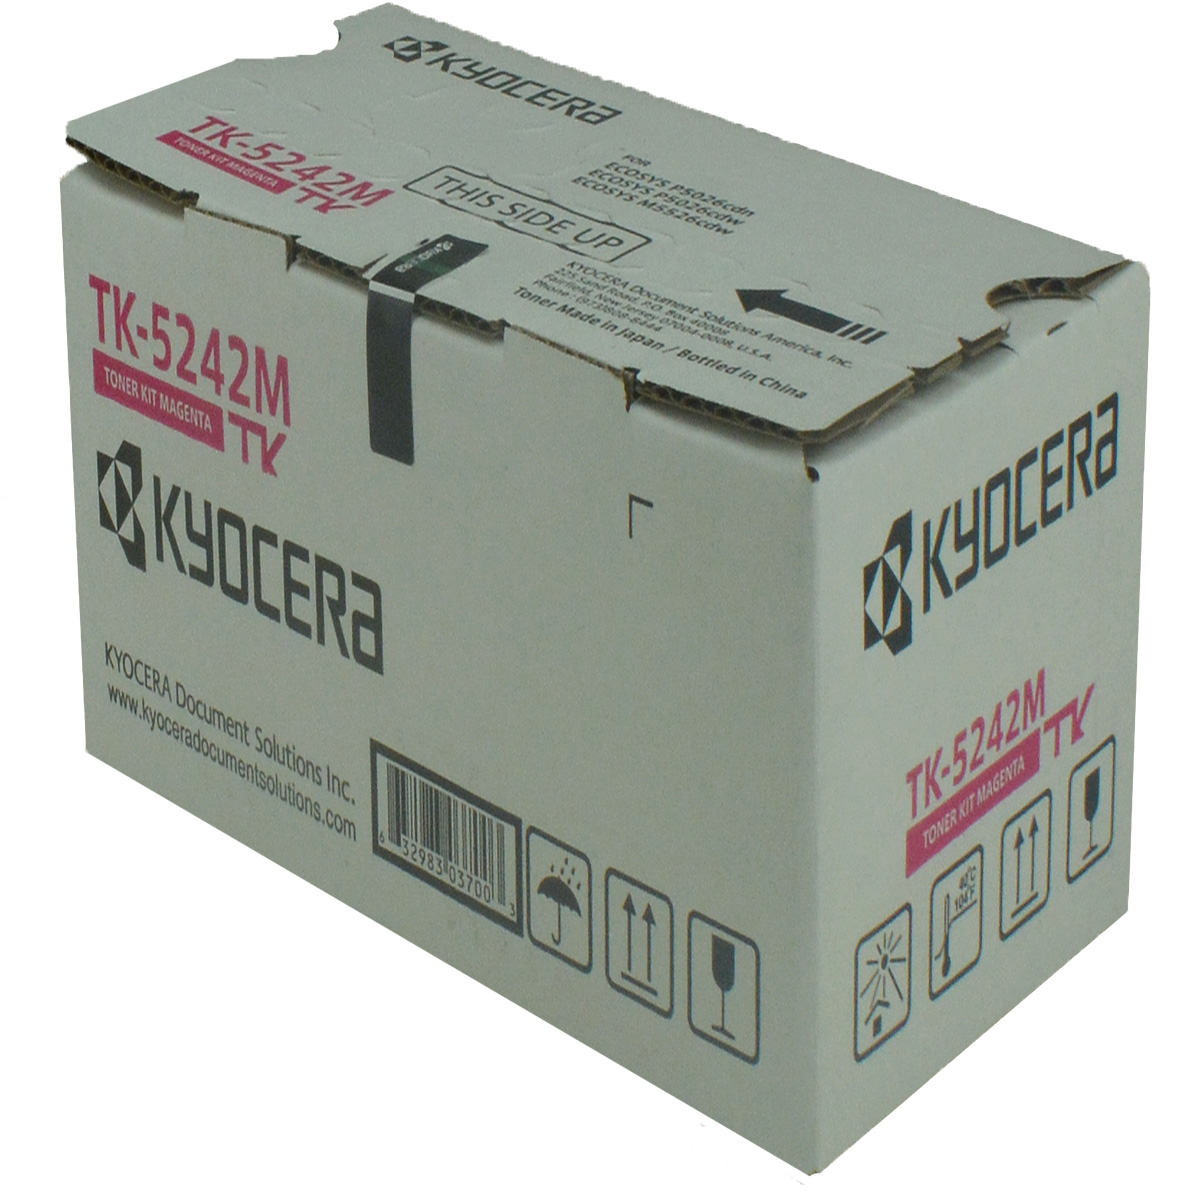 OEM Kyocera Mita TK-5242M (1T02R7BUS0) Toner Cartridge, MAGENTA, 3K YIELD - for use in Kyocera Mita M5526CDW printer, P5026CDW - image 1 of 1